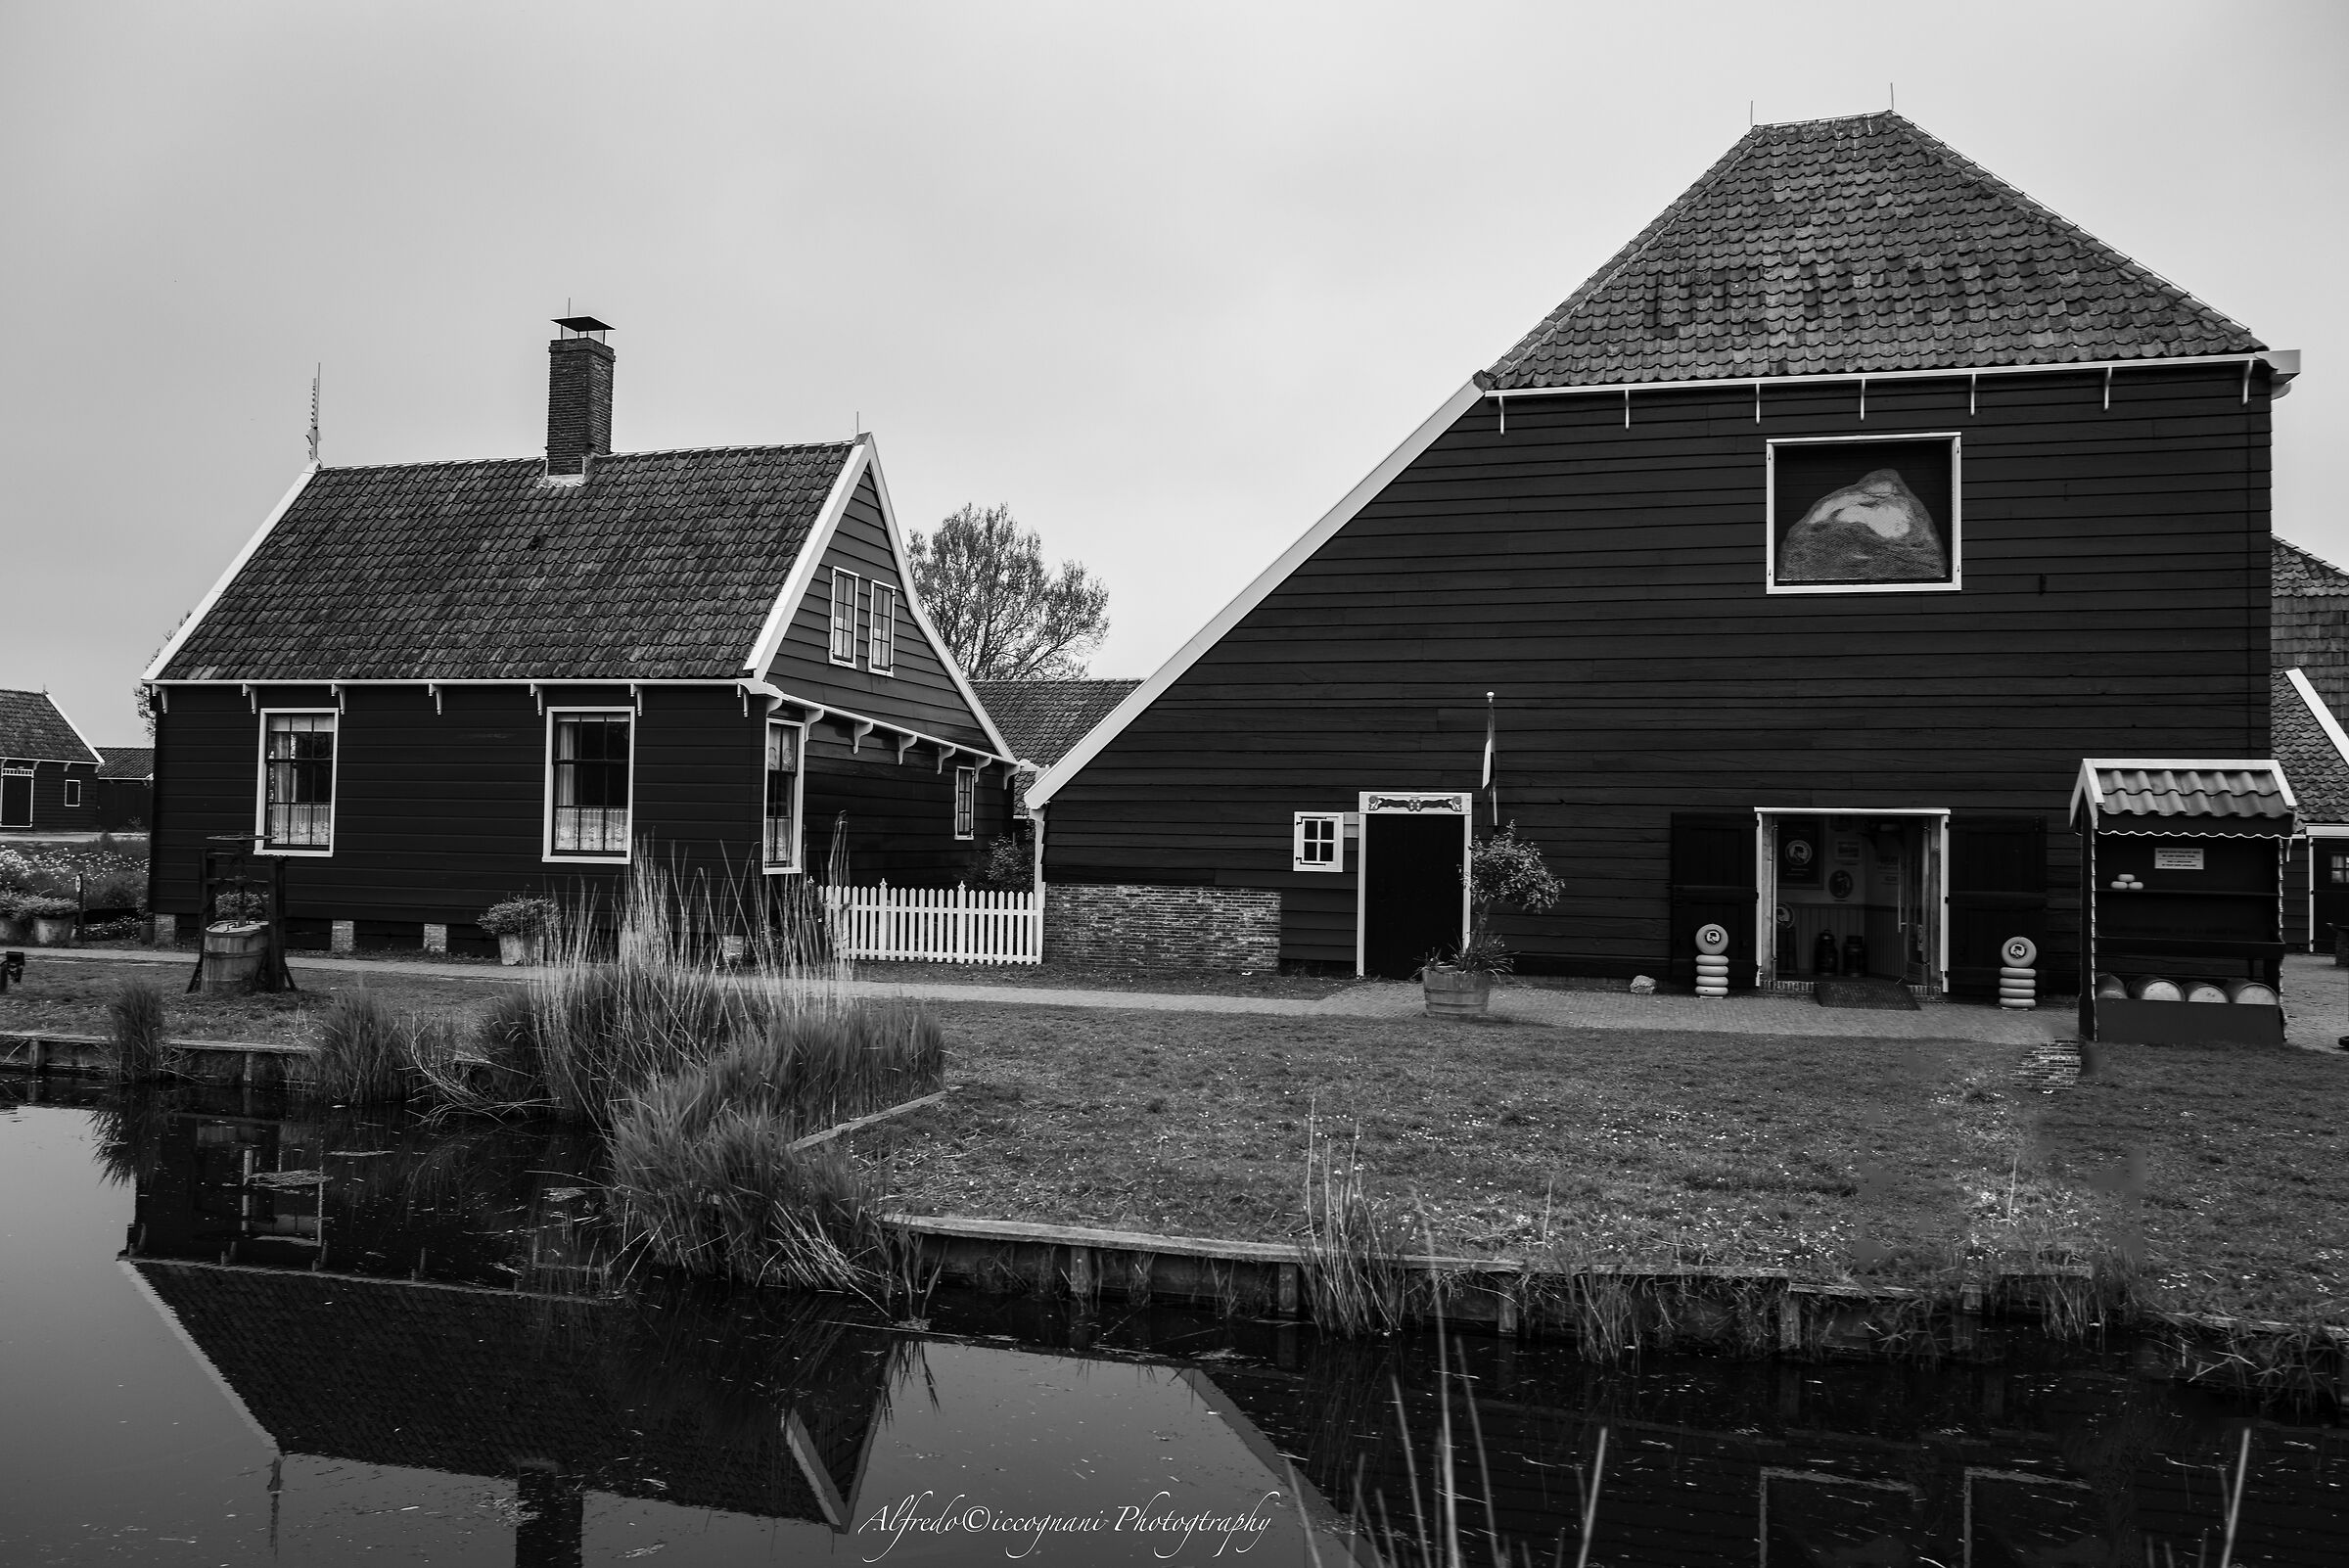 The village of Zaanse Schans...